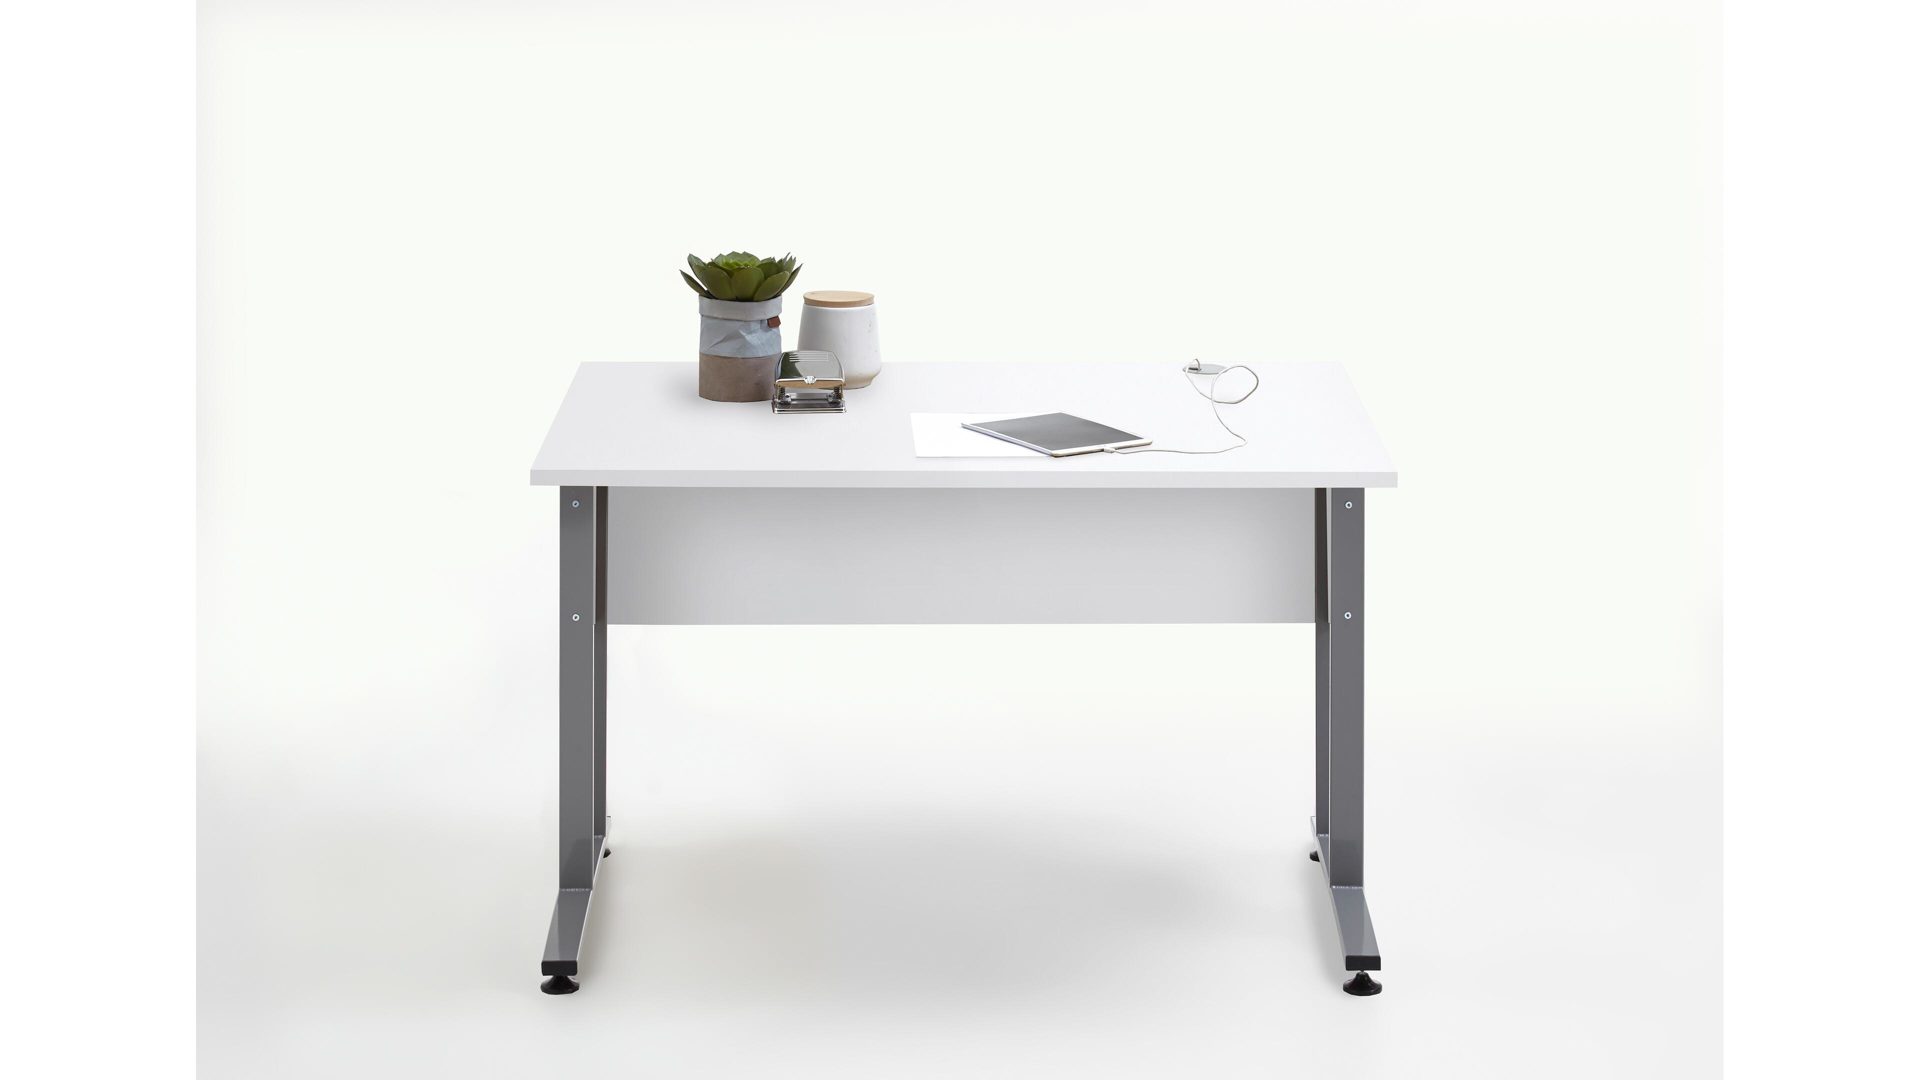 Schreibtisch Fmd furniture aus Holz in Weiß Schreibtisch als Büromöbel brilliantweiße Kunststoffoberflächen – Länge ca. 120 cm